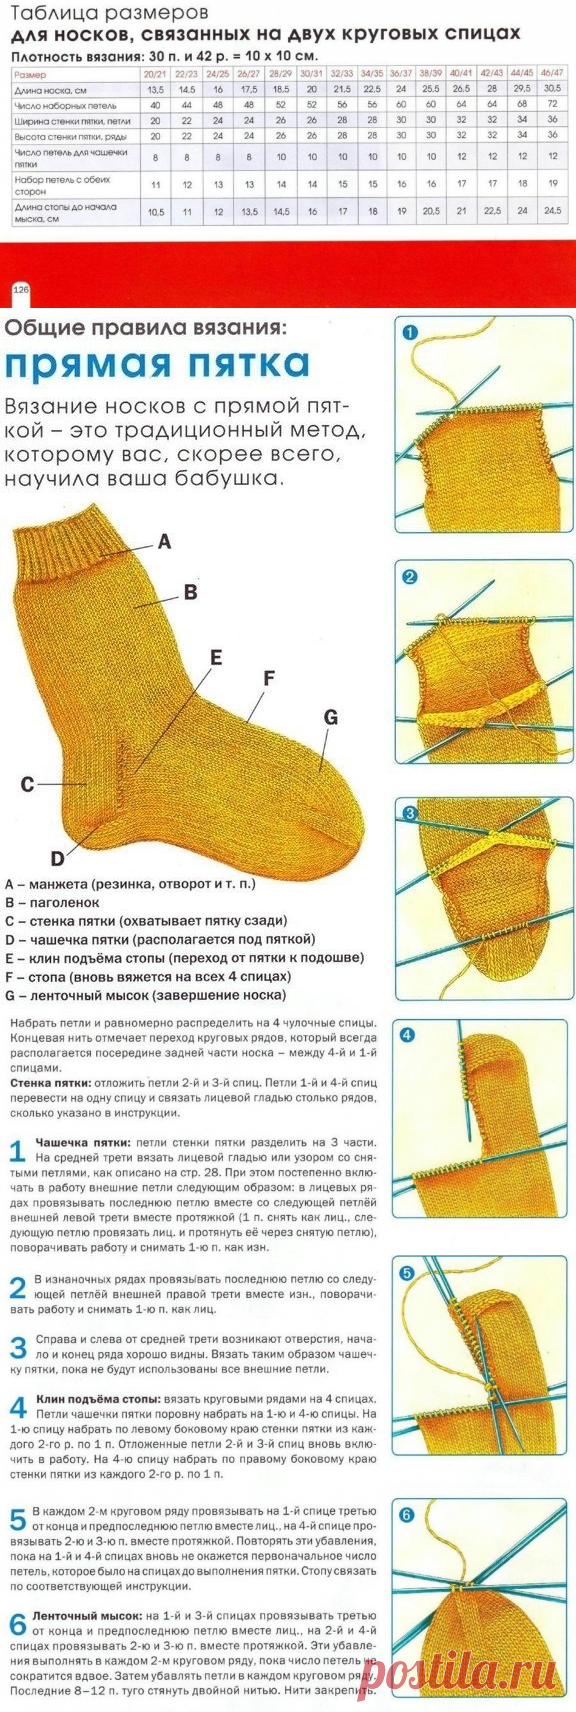 Как делать пятку на носке спицами